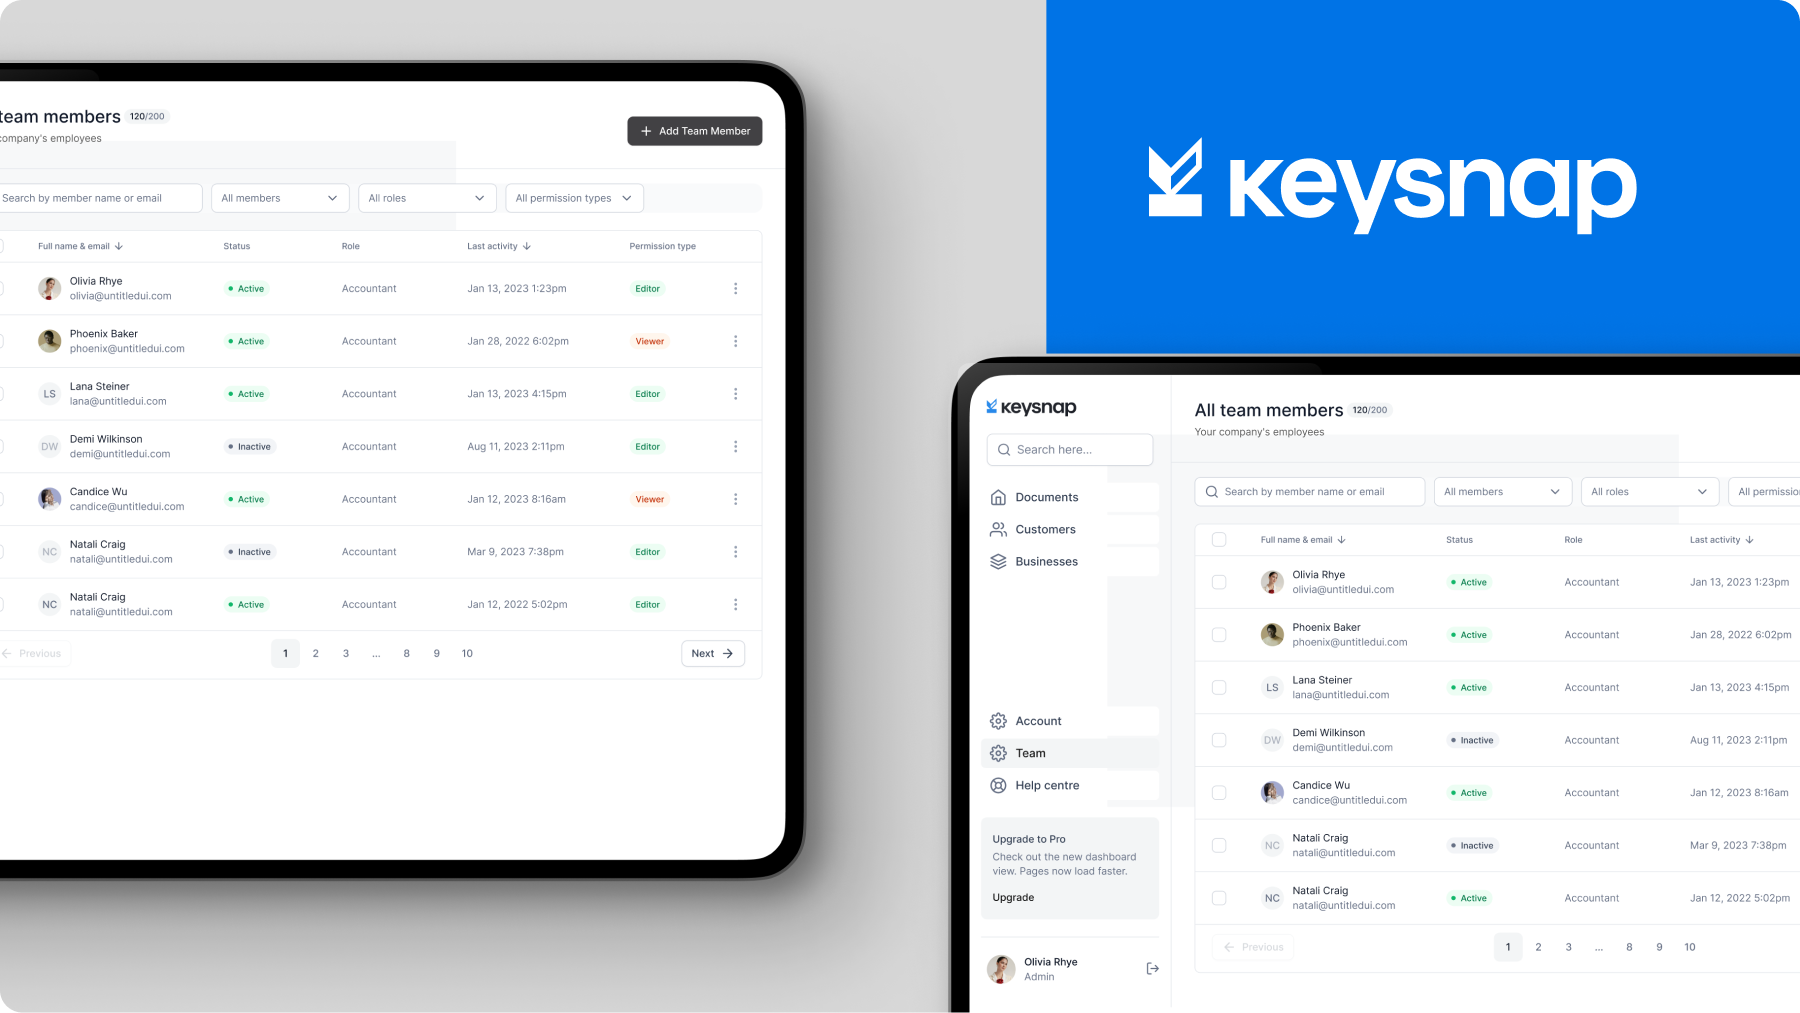 Keysnap product screens